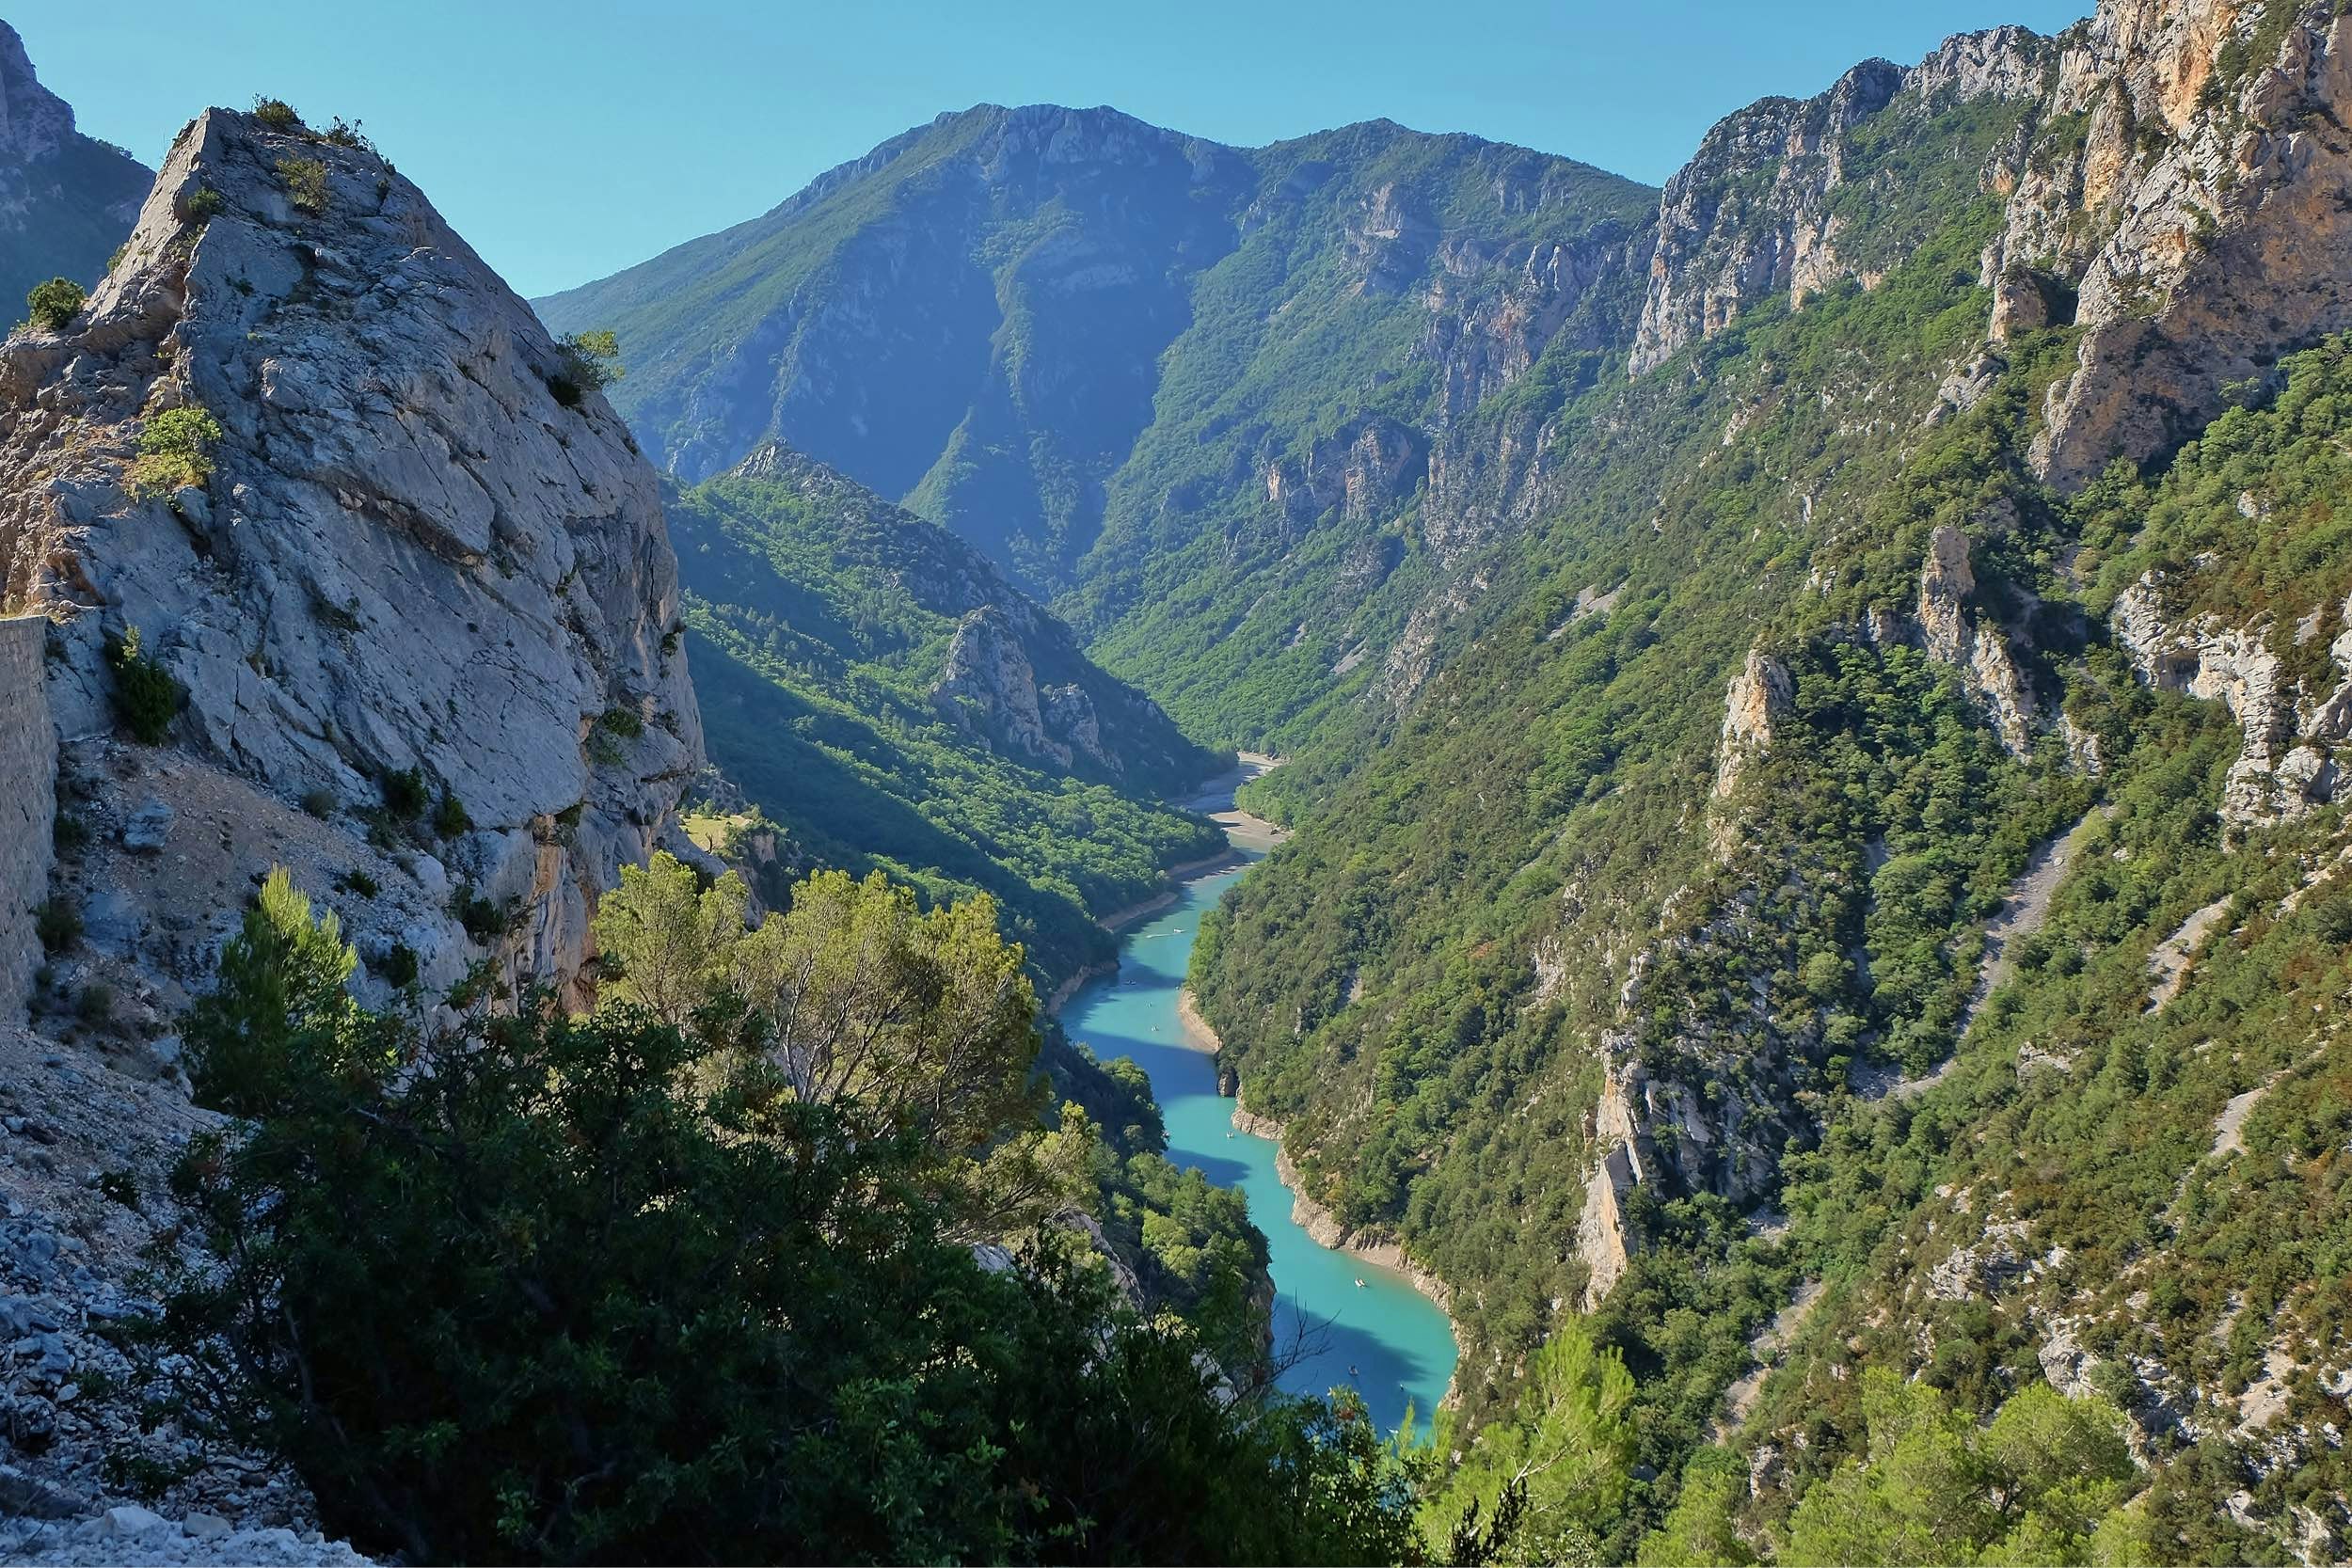 Discover the Gorges du Verdon